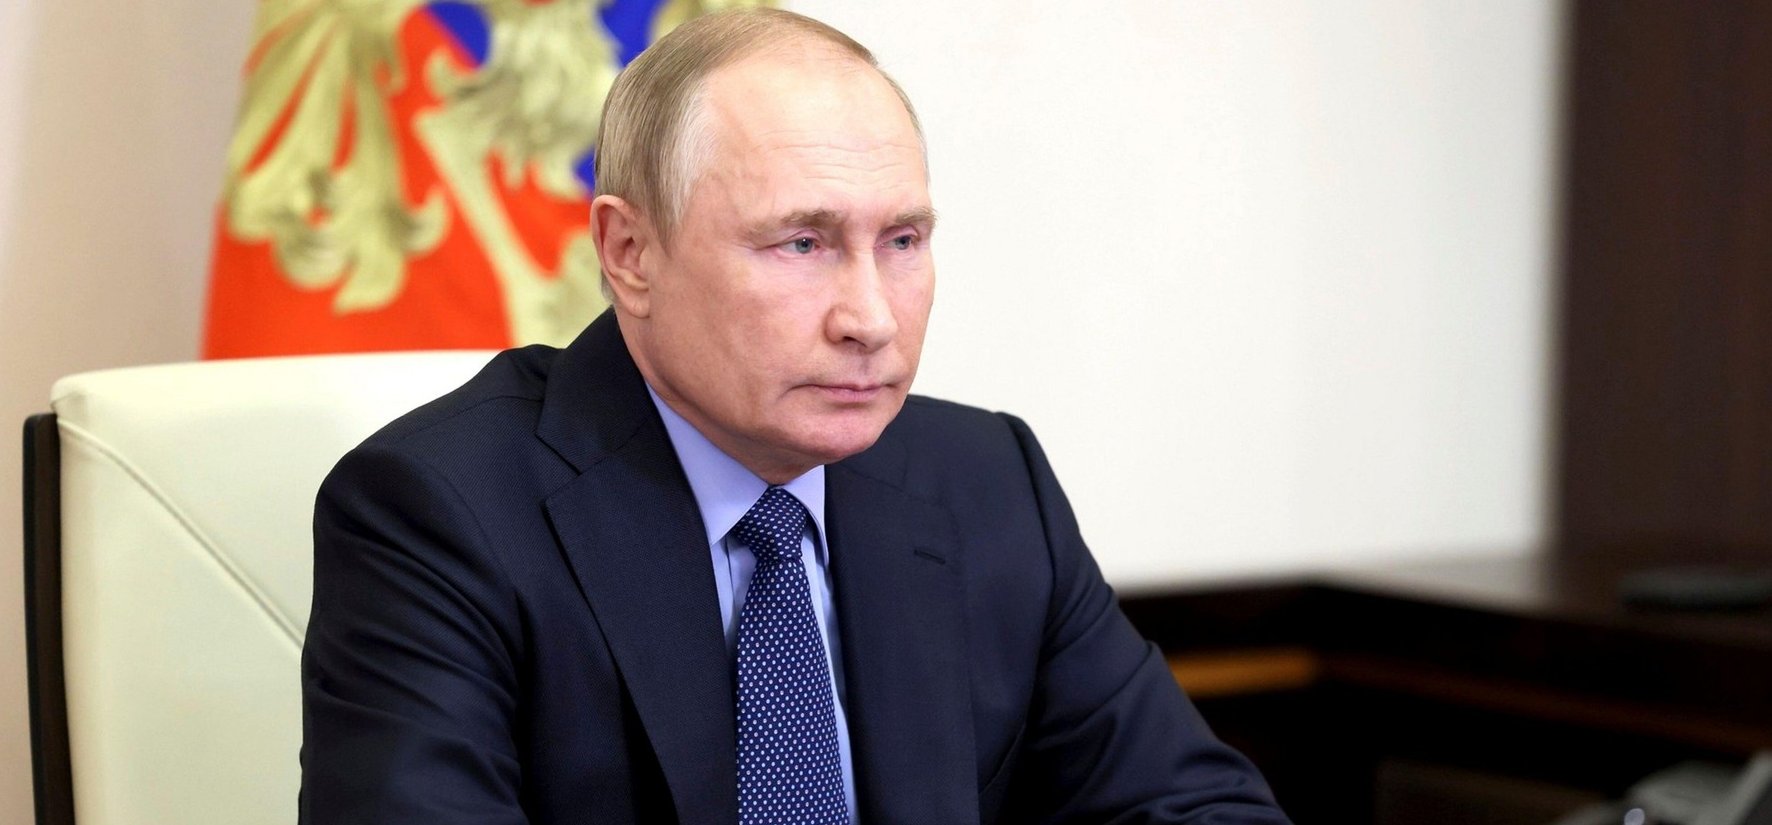 Lelepleződött Putyin titka, igazak voltak a pletykák Oroszország elnökéről